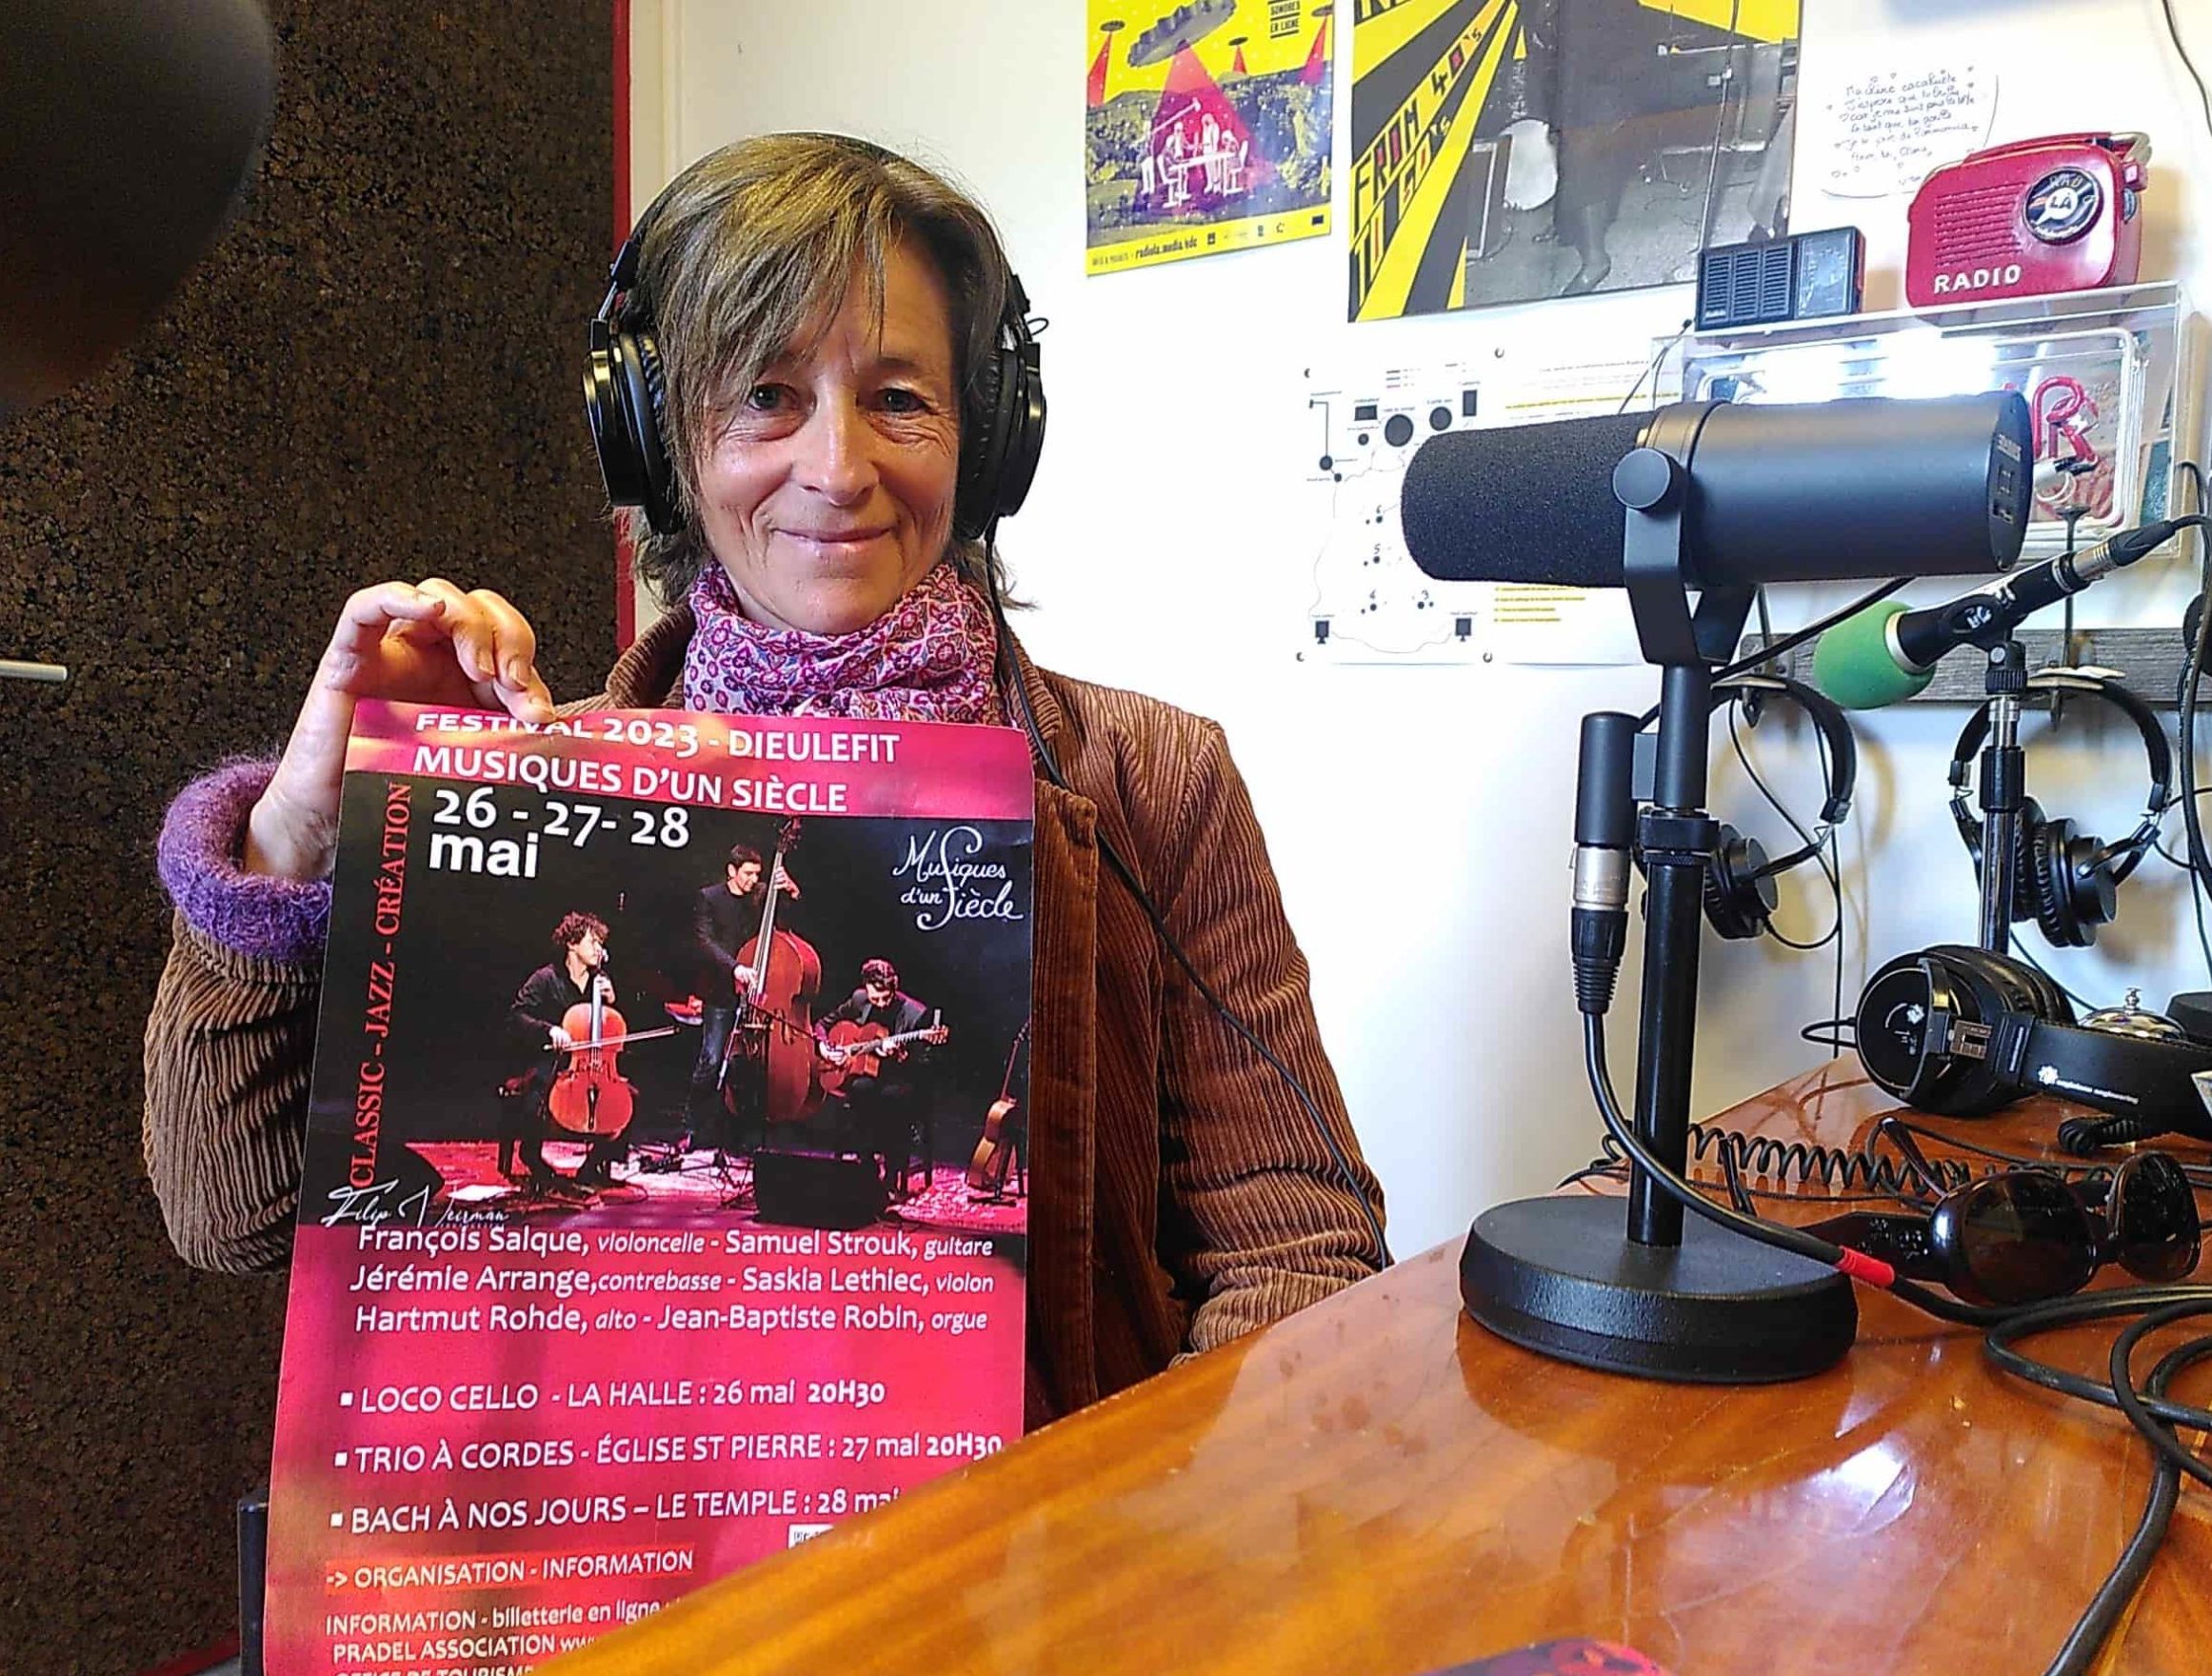 Pascaline Dallemagne, présidente de l'association Pradel, qui organise le festival Musiques d'un siècle à Dieulefit.